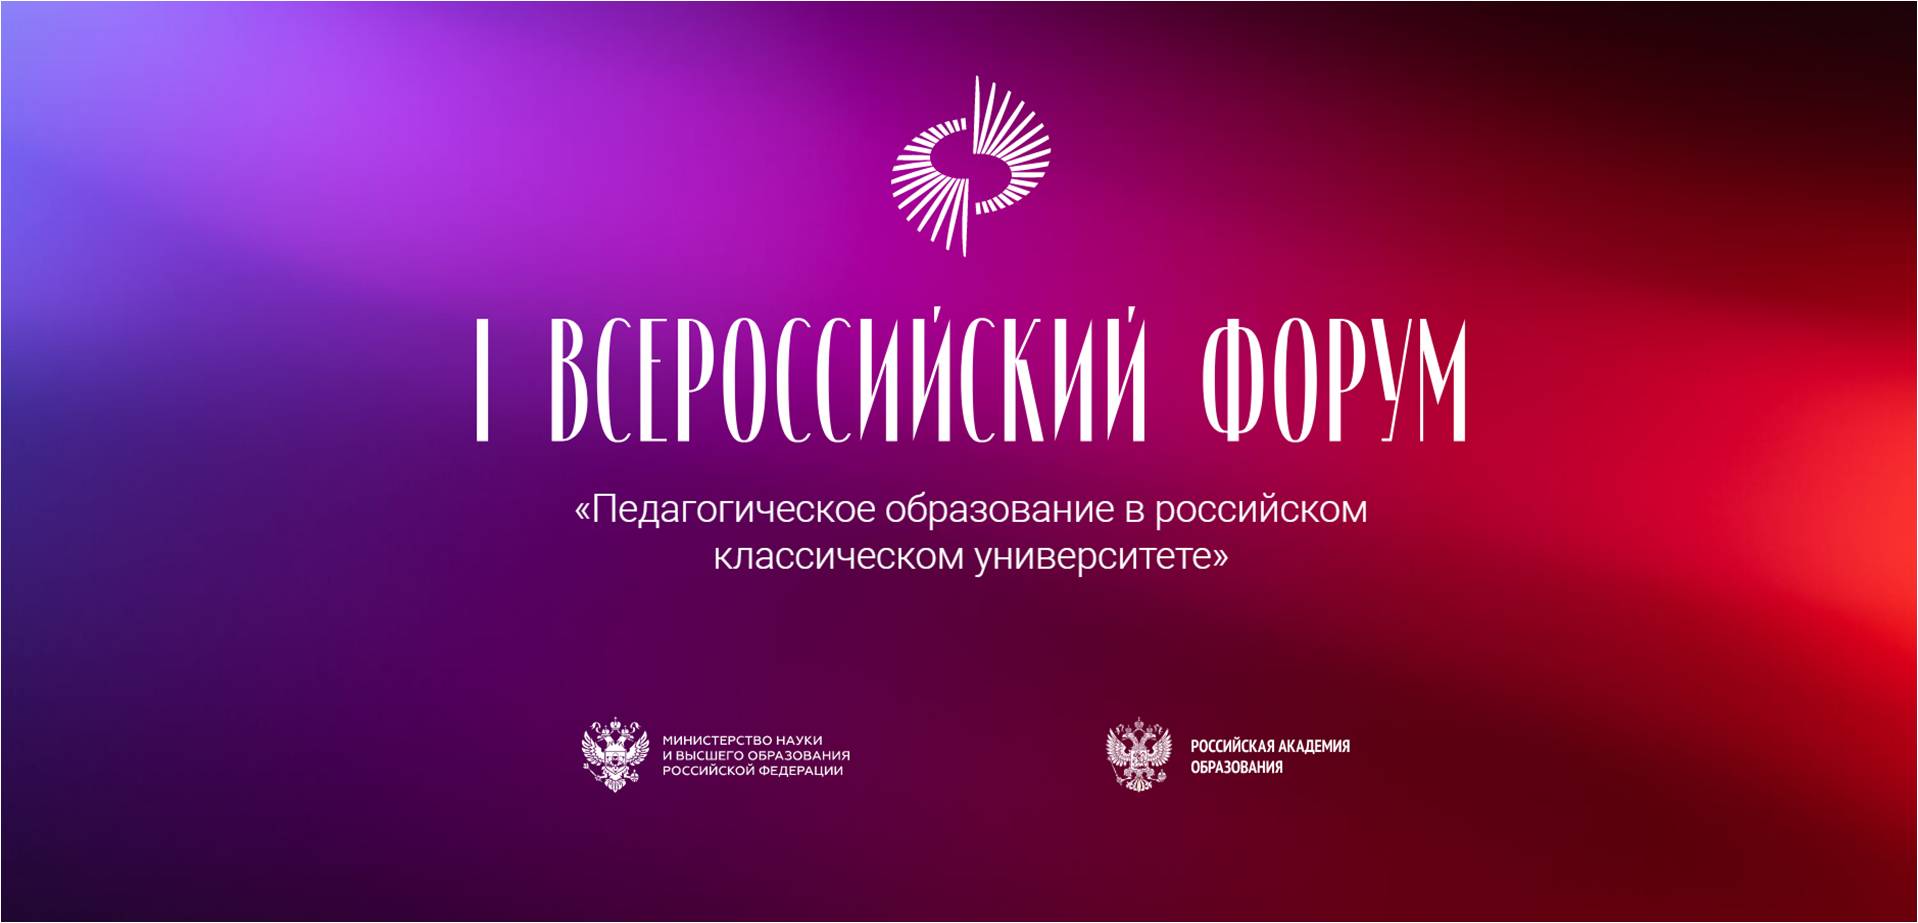 17-18 марта на базе Российской академии образования состоялся Первый всероссийский форум «Педагогическое образование в российском классическом университете»